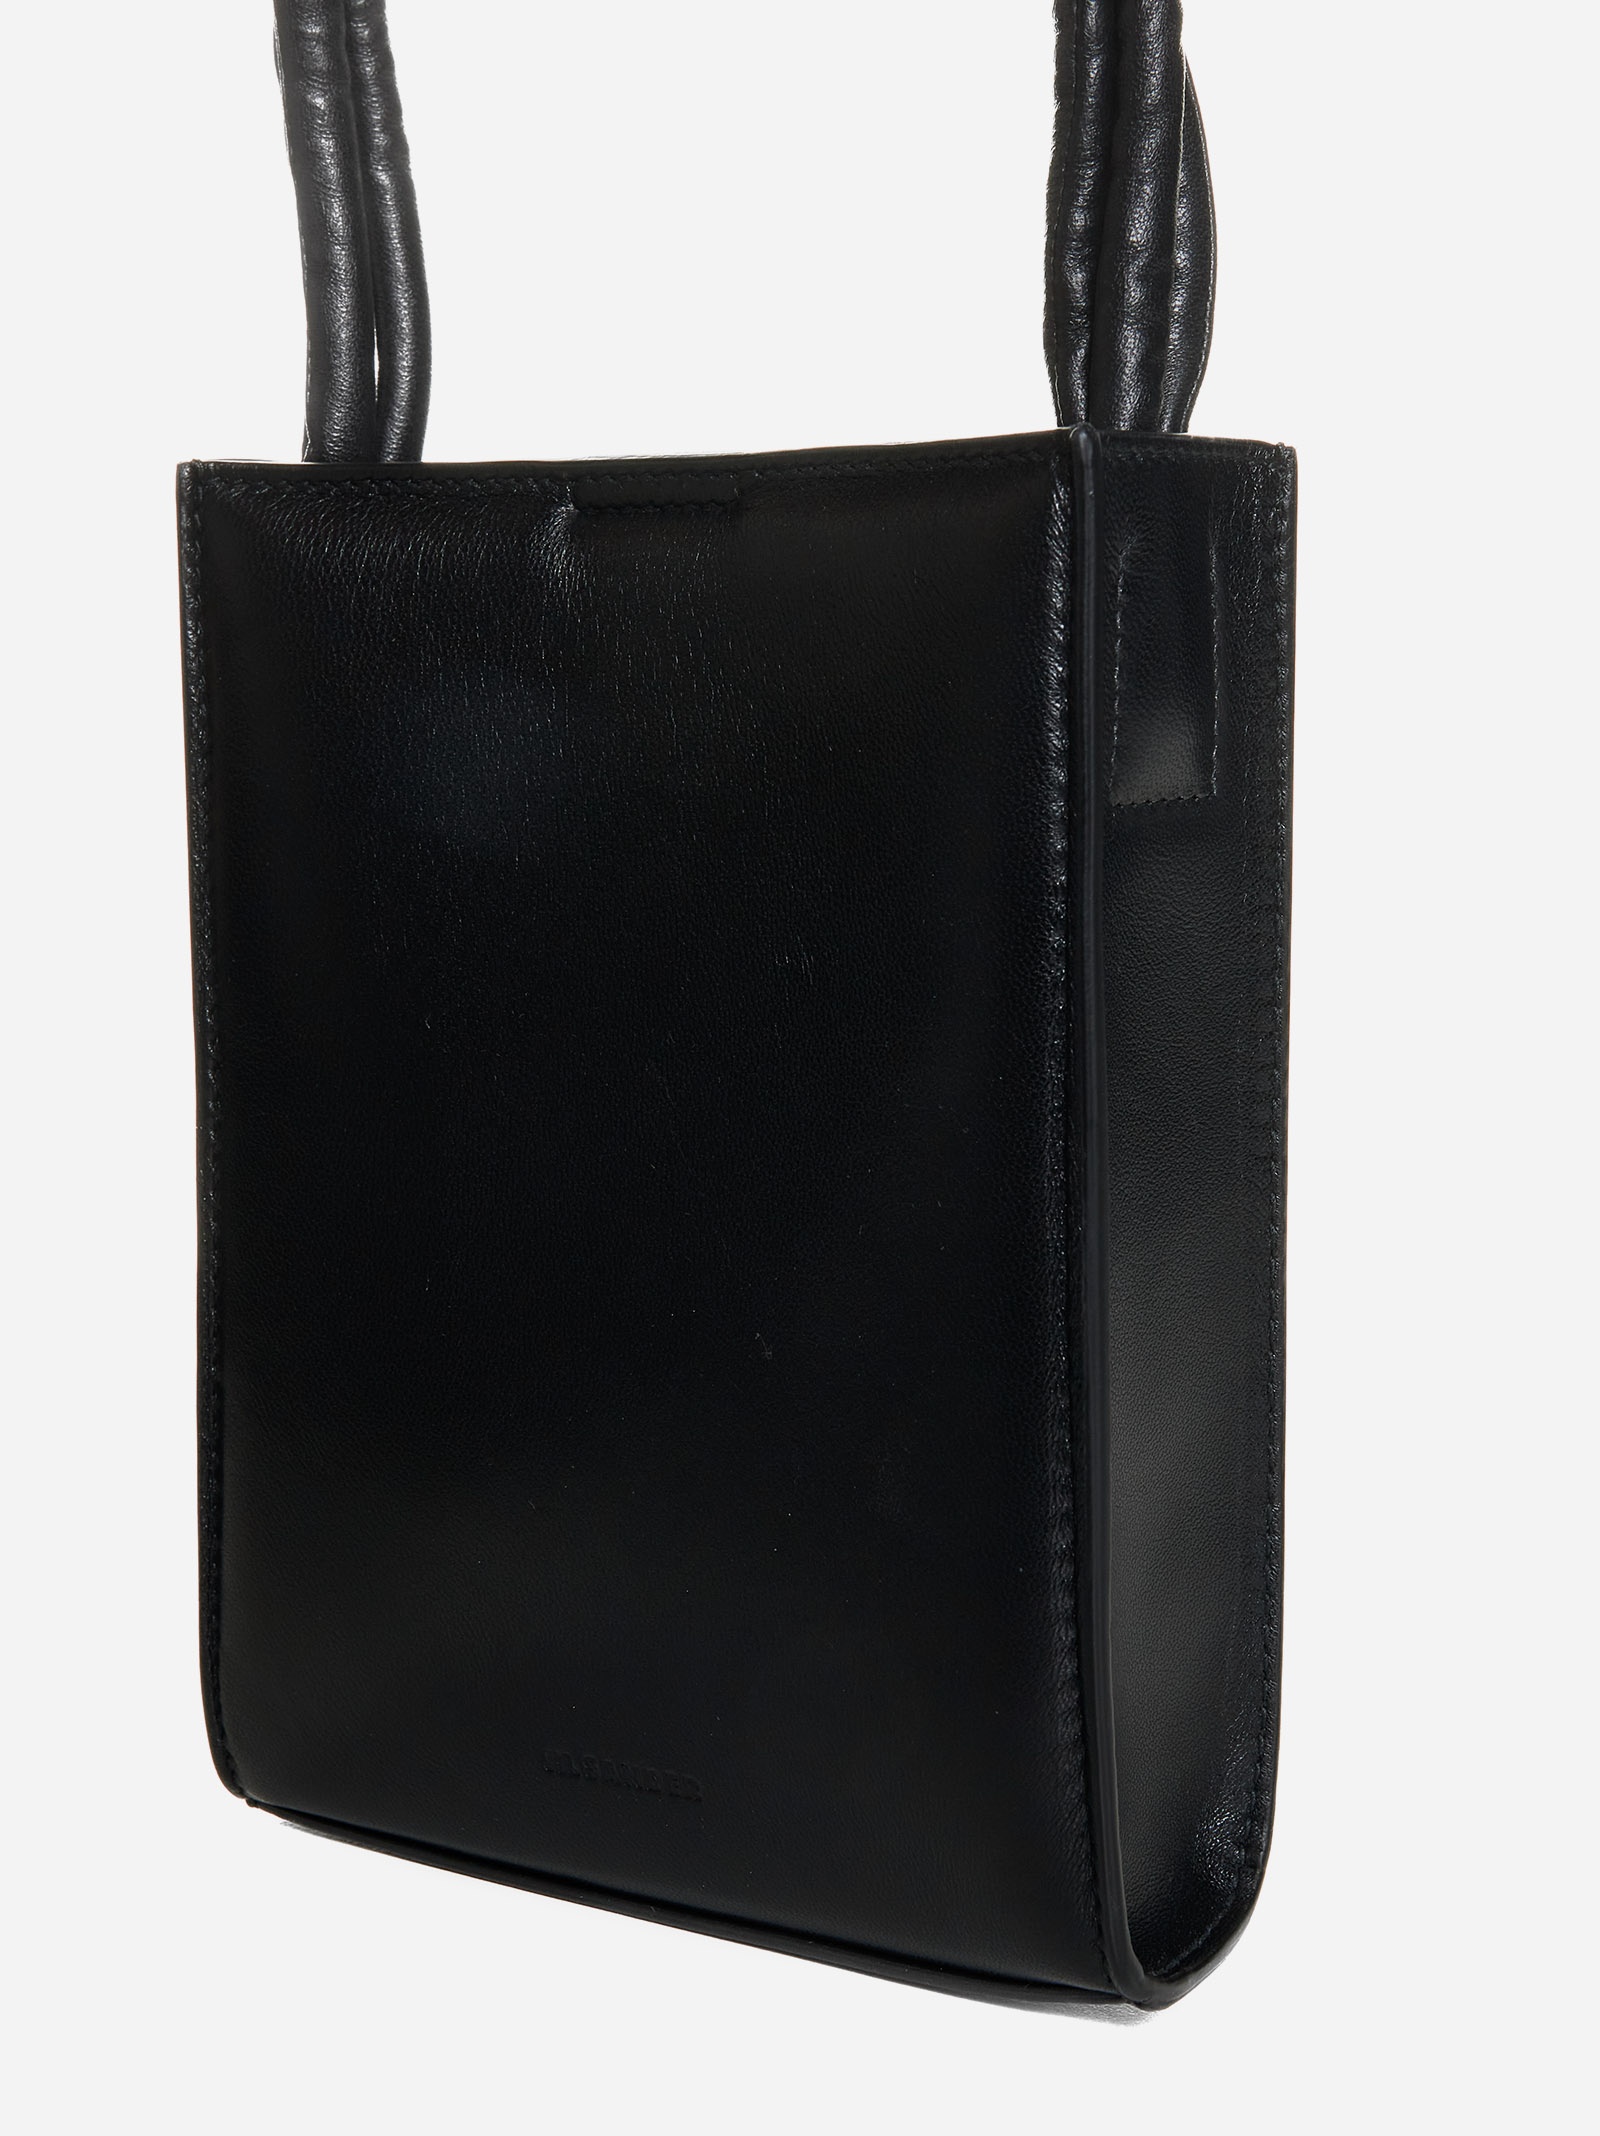 Tangle leather small bag - 4